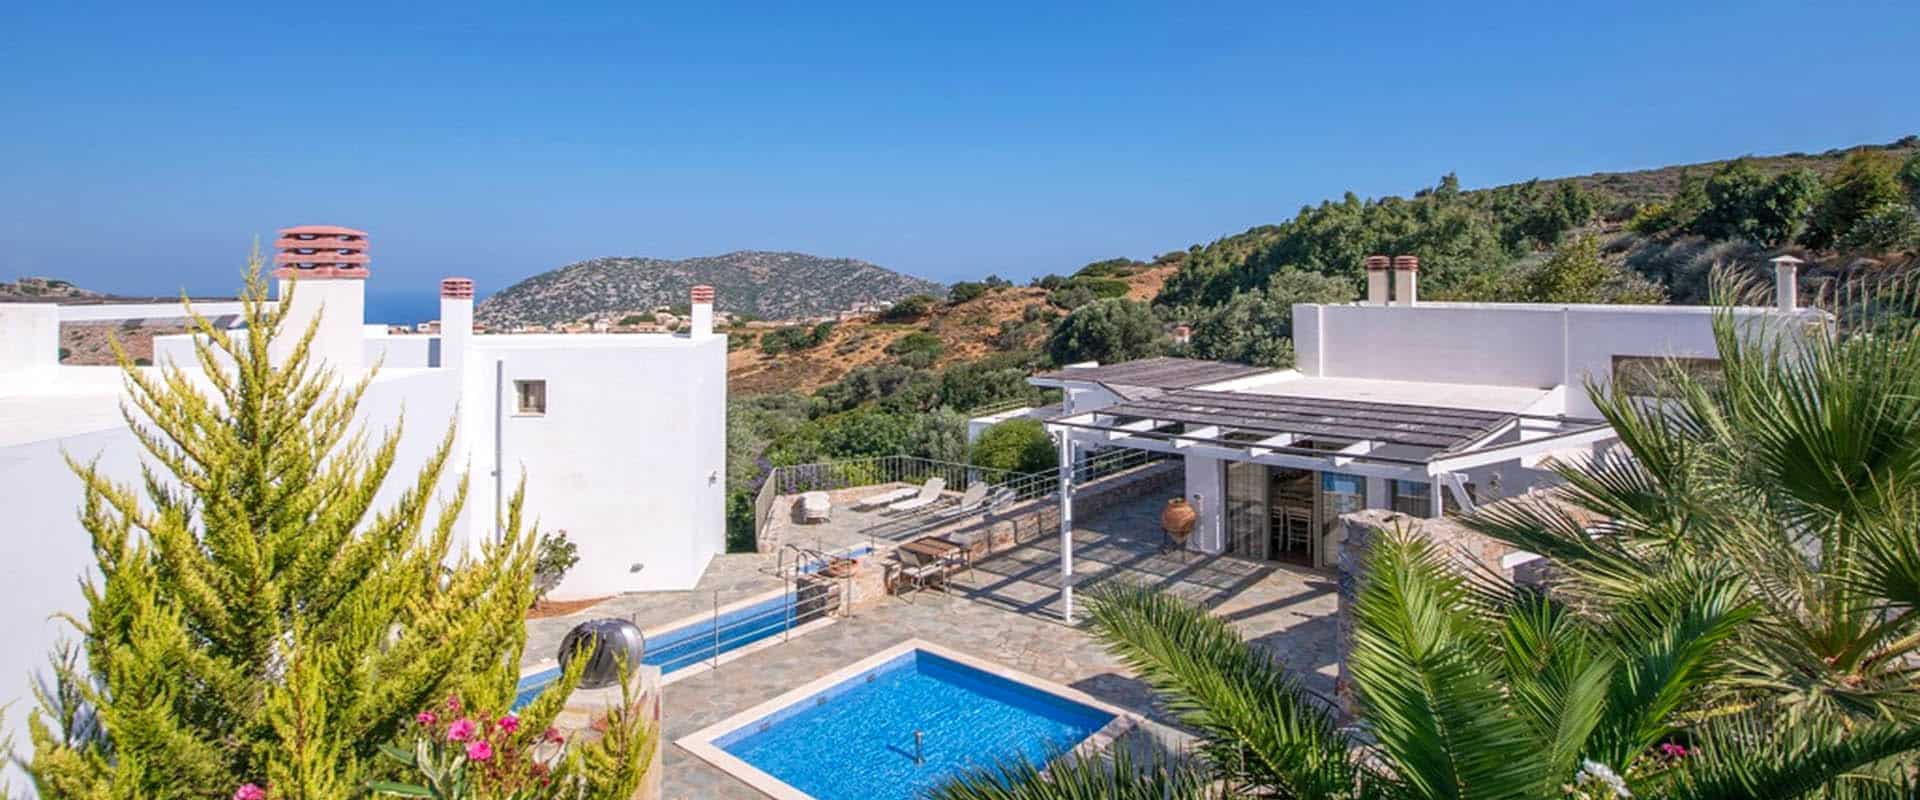 hôtel de vacances écotourisme tourisme durable Crète Grèce